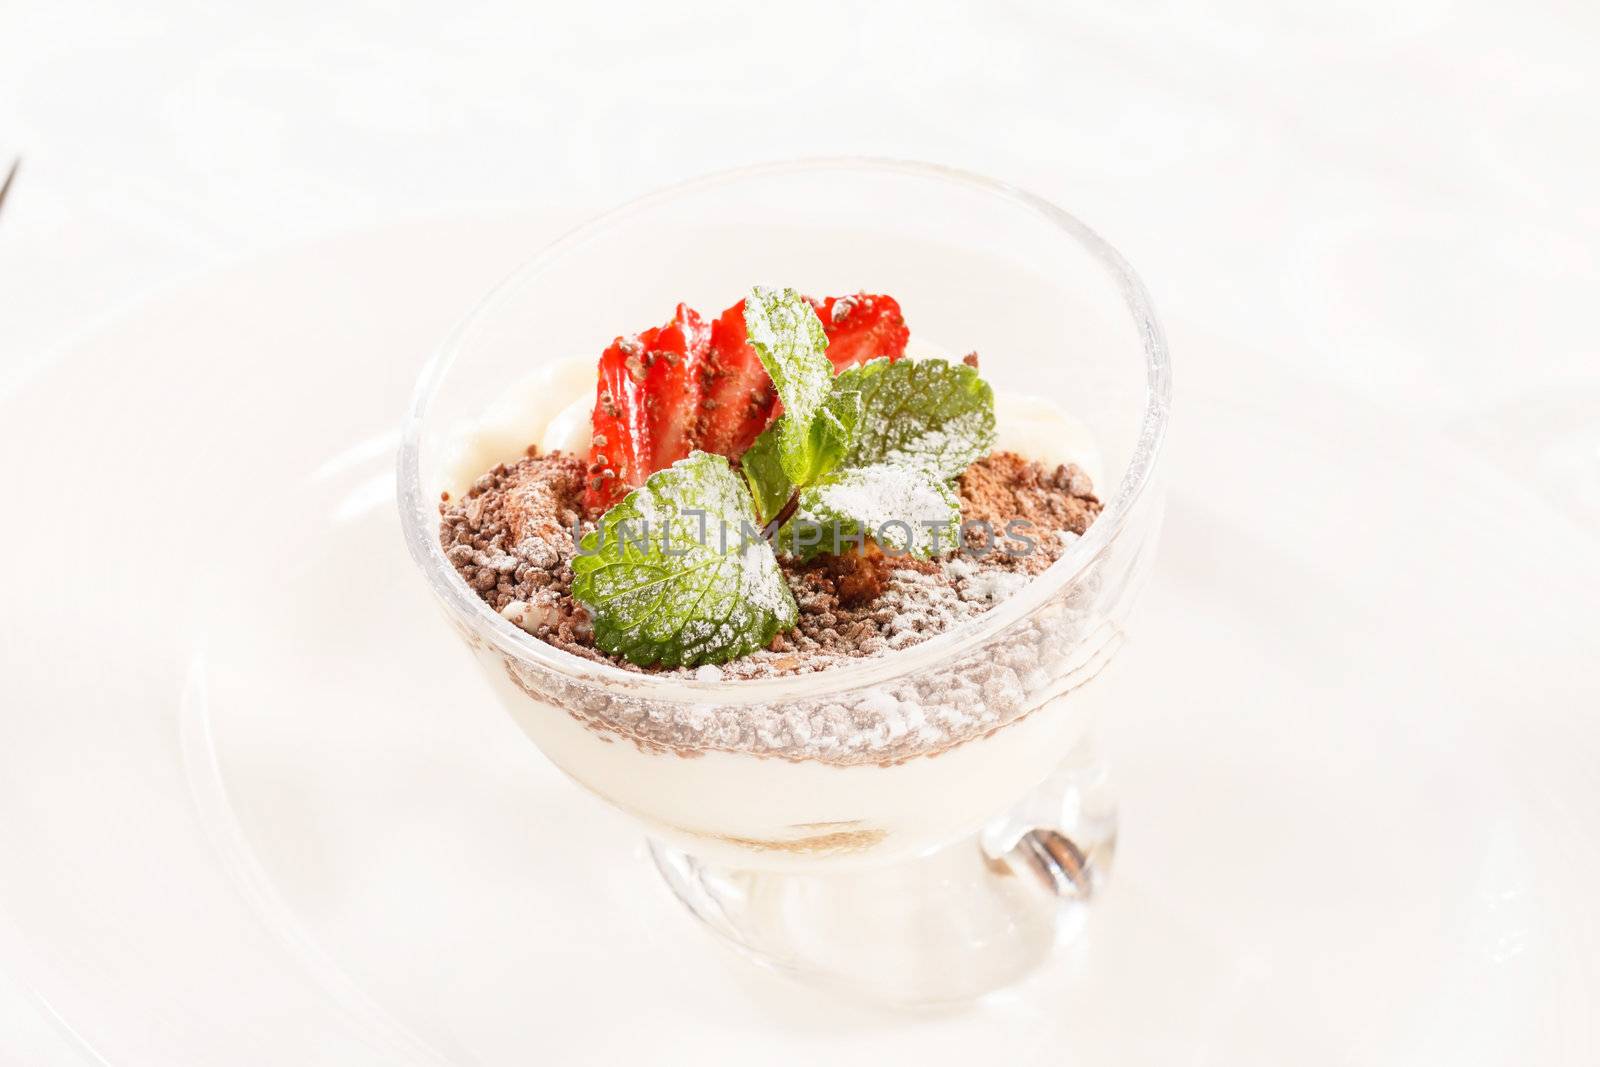 Tiramisu with strawberry